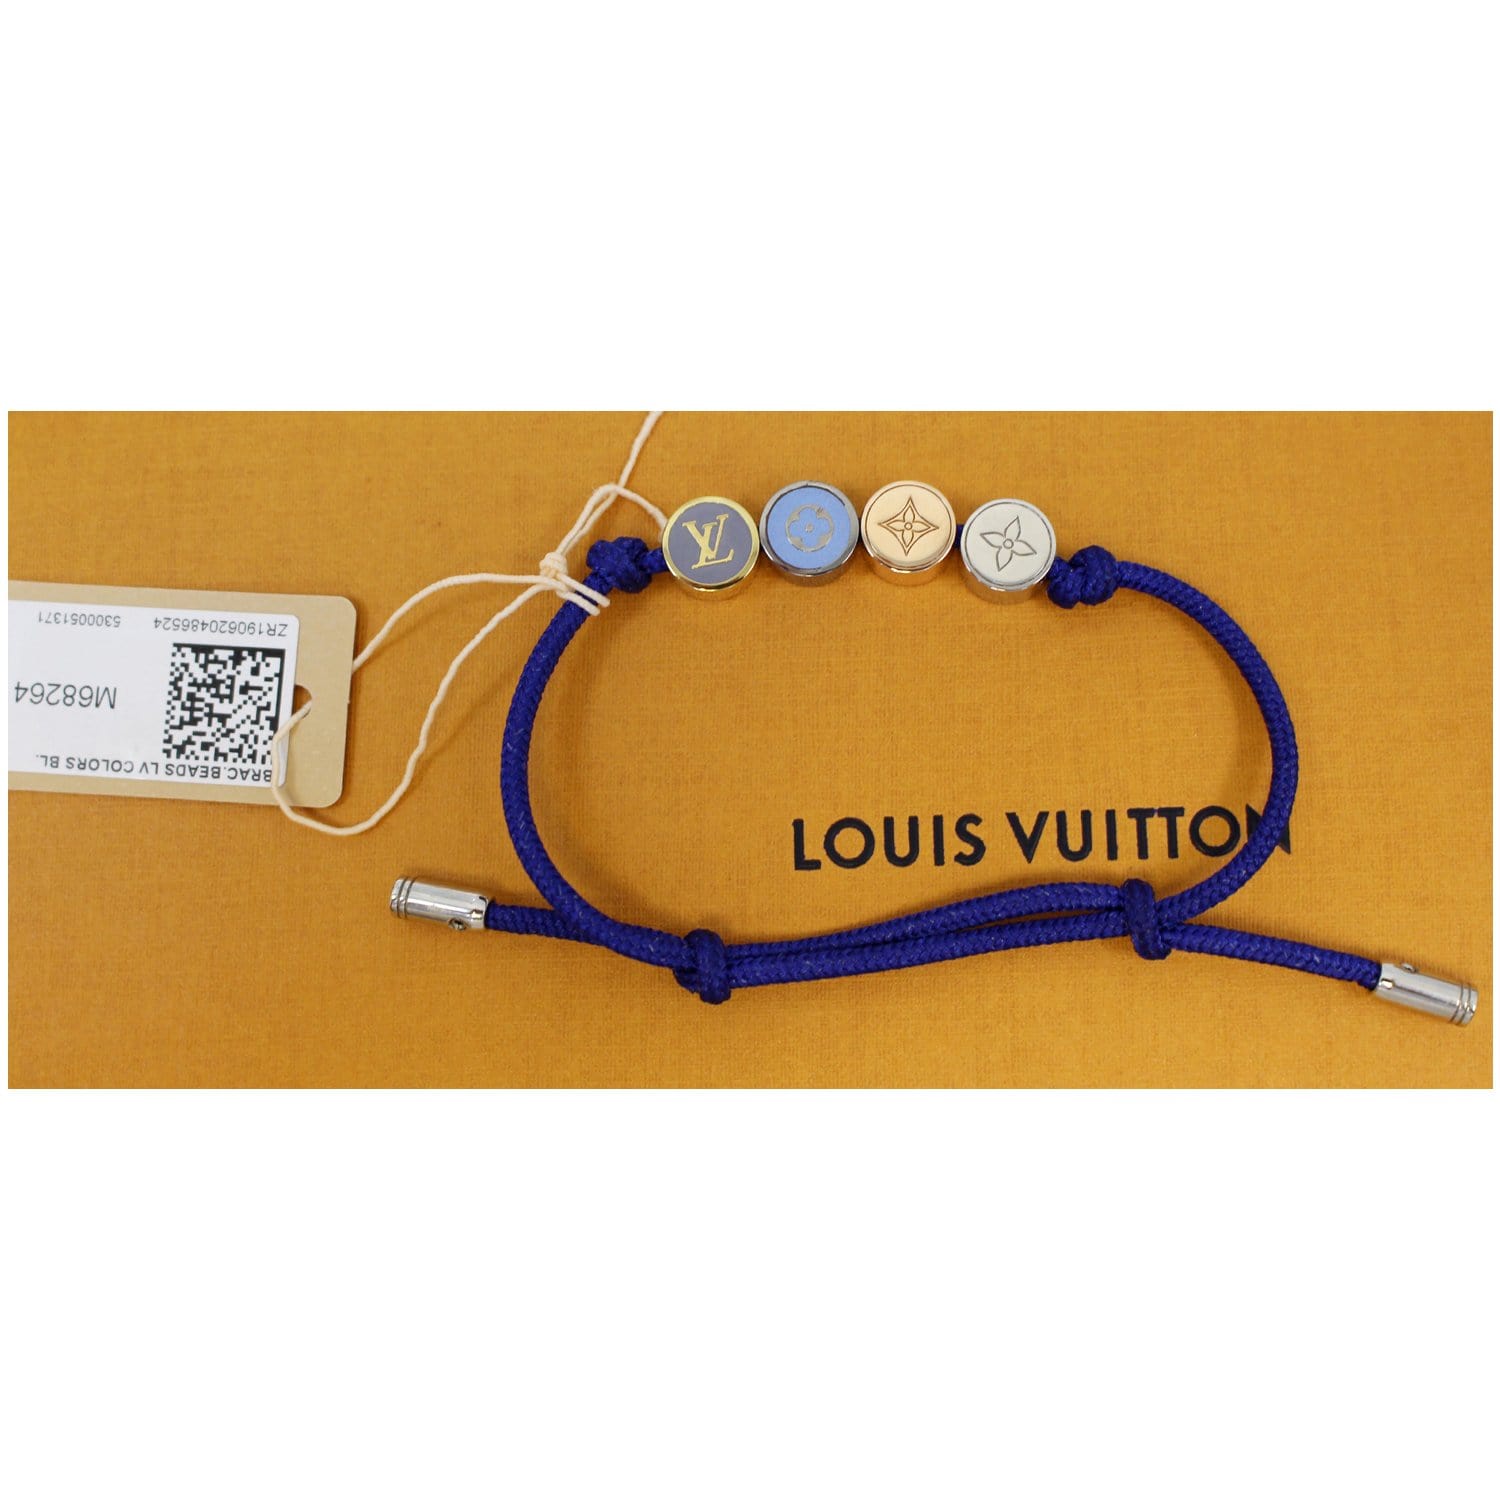 Louis Vuitton Monogram Party Bracelet - Blue, Ruthenium-Plated Bead,  Bracelets - LOU740611